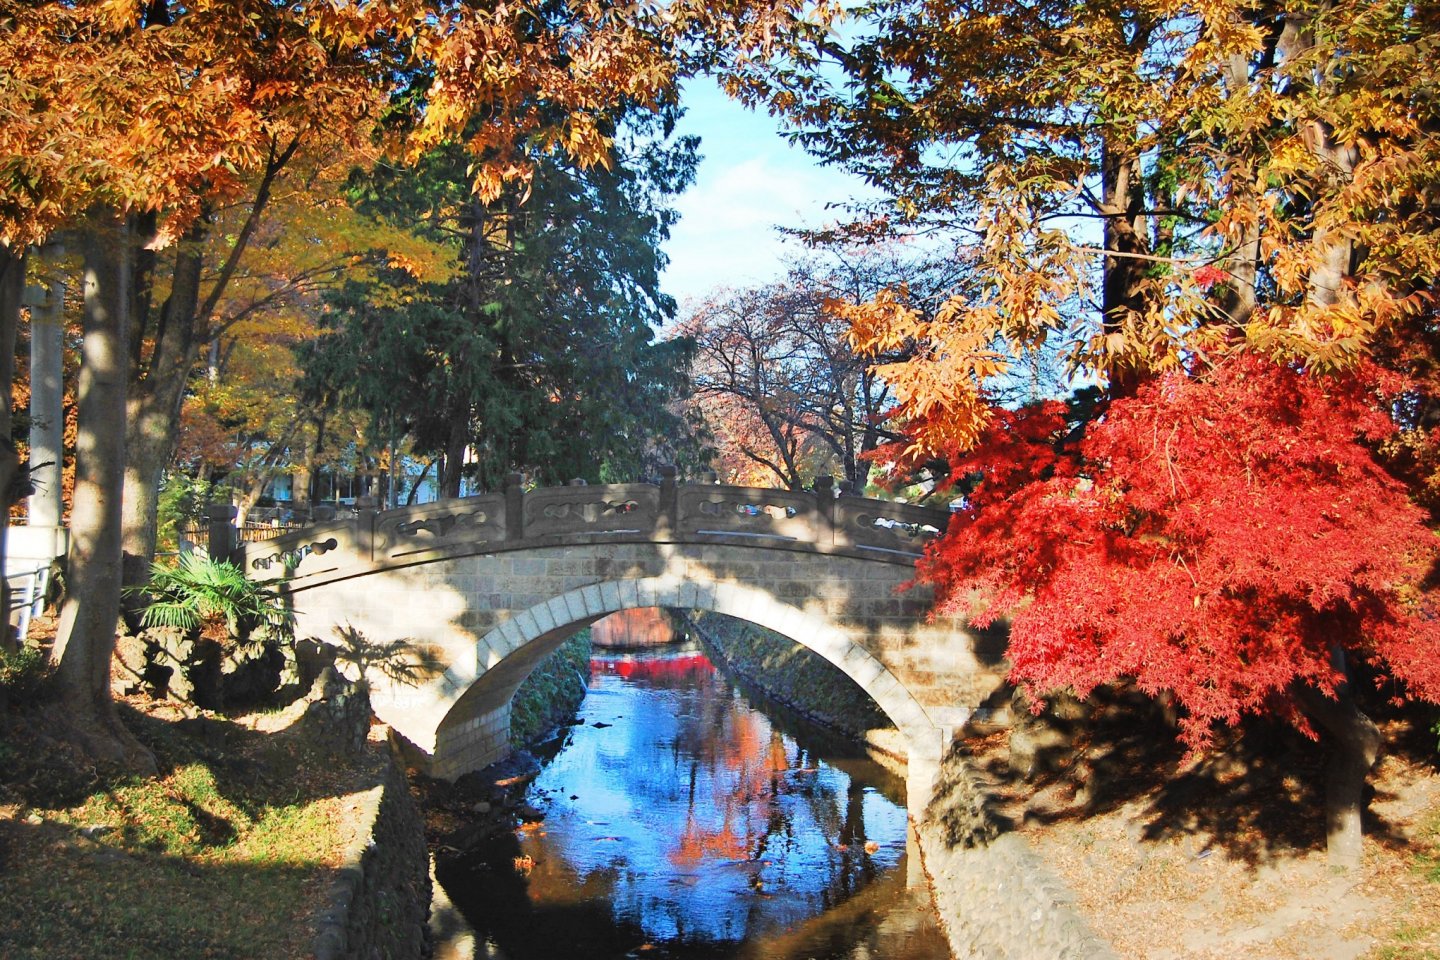 Sebuah jembatan batu yang cantik dengan suasana musim gugur.